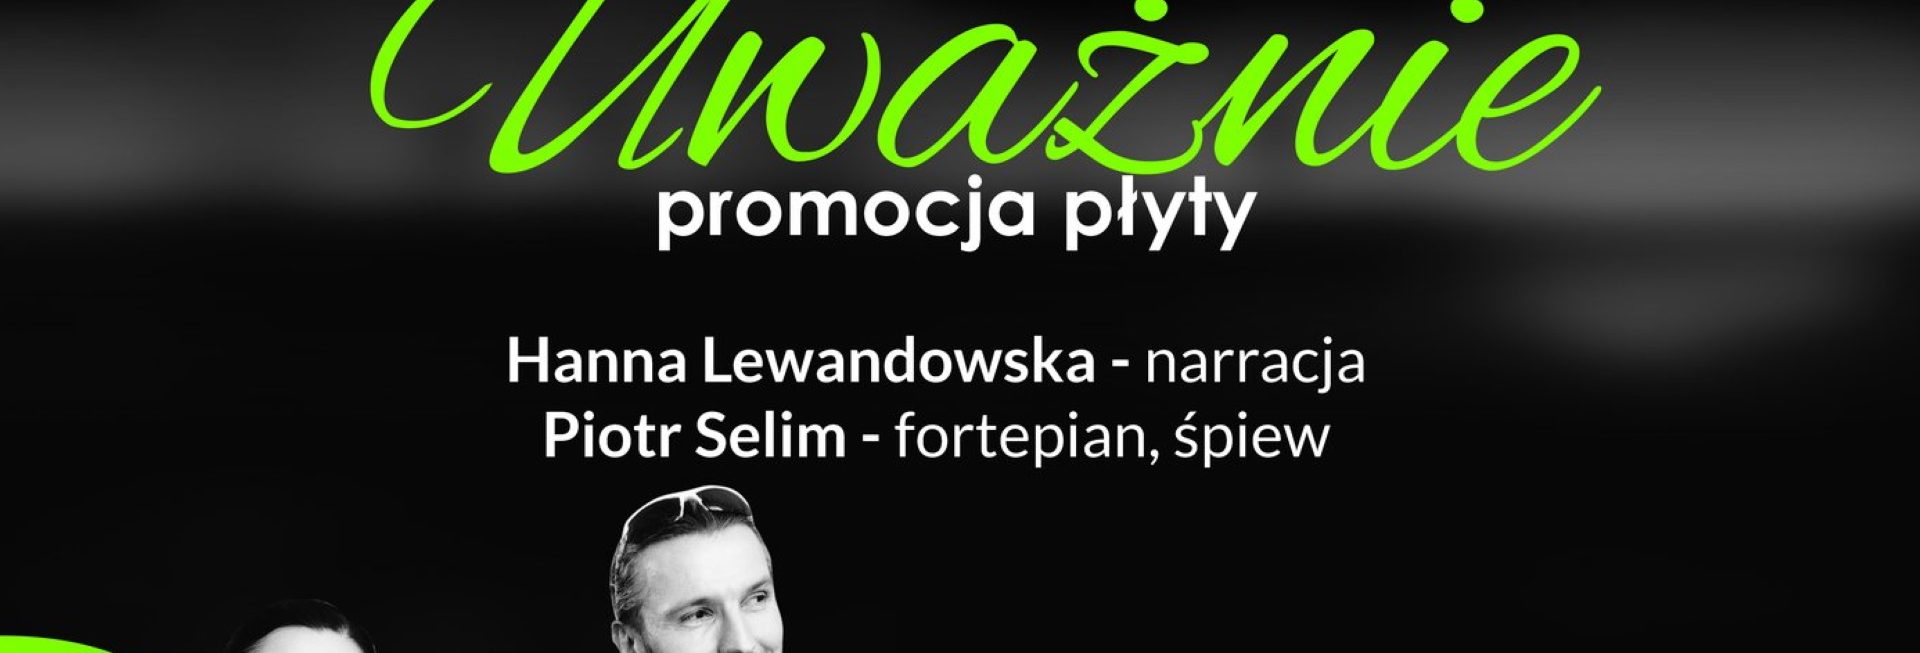 Plakat graficzny zapraszający do Olsztyna na koncert Piotr Selim "Uważnie" Olsztyn 2022.